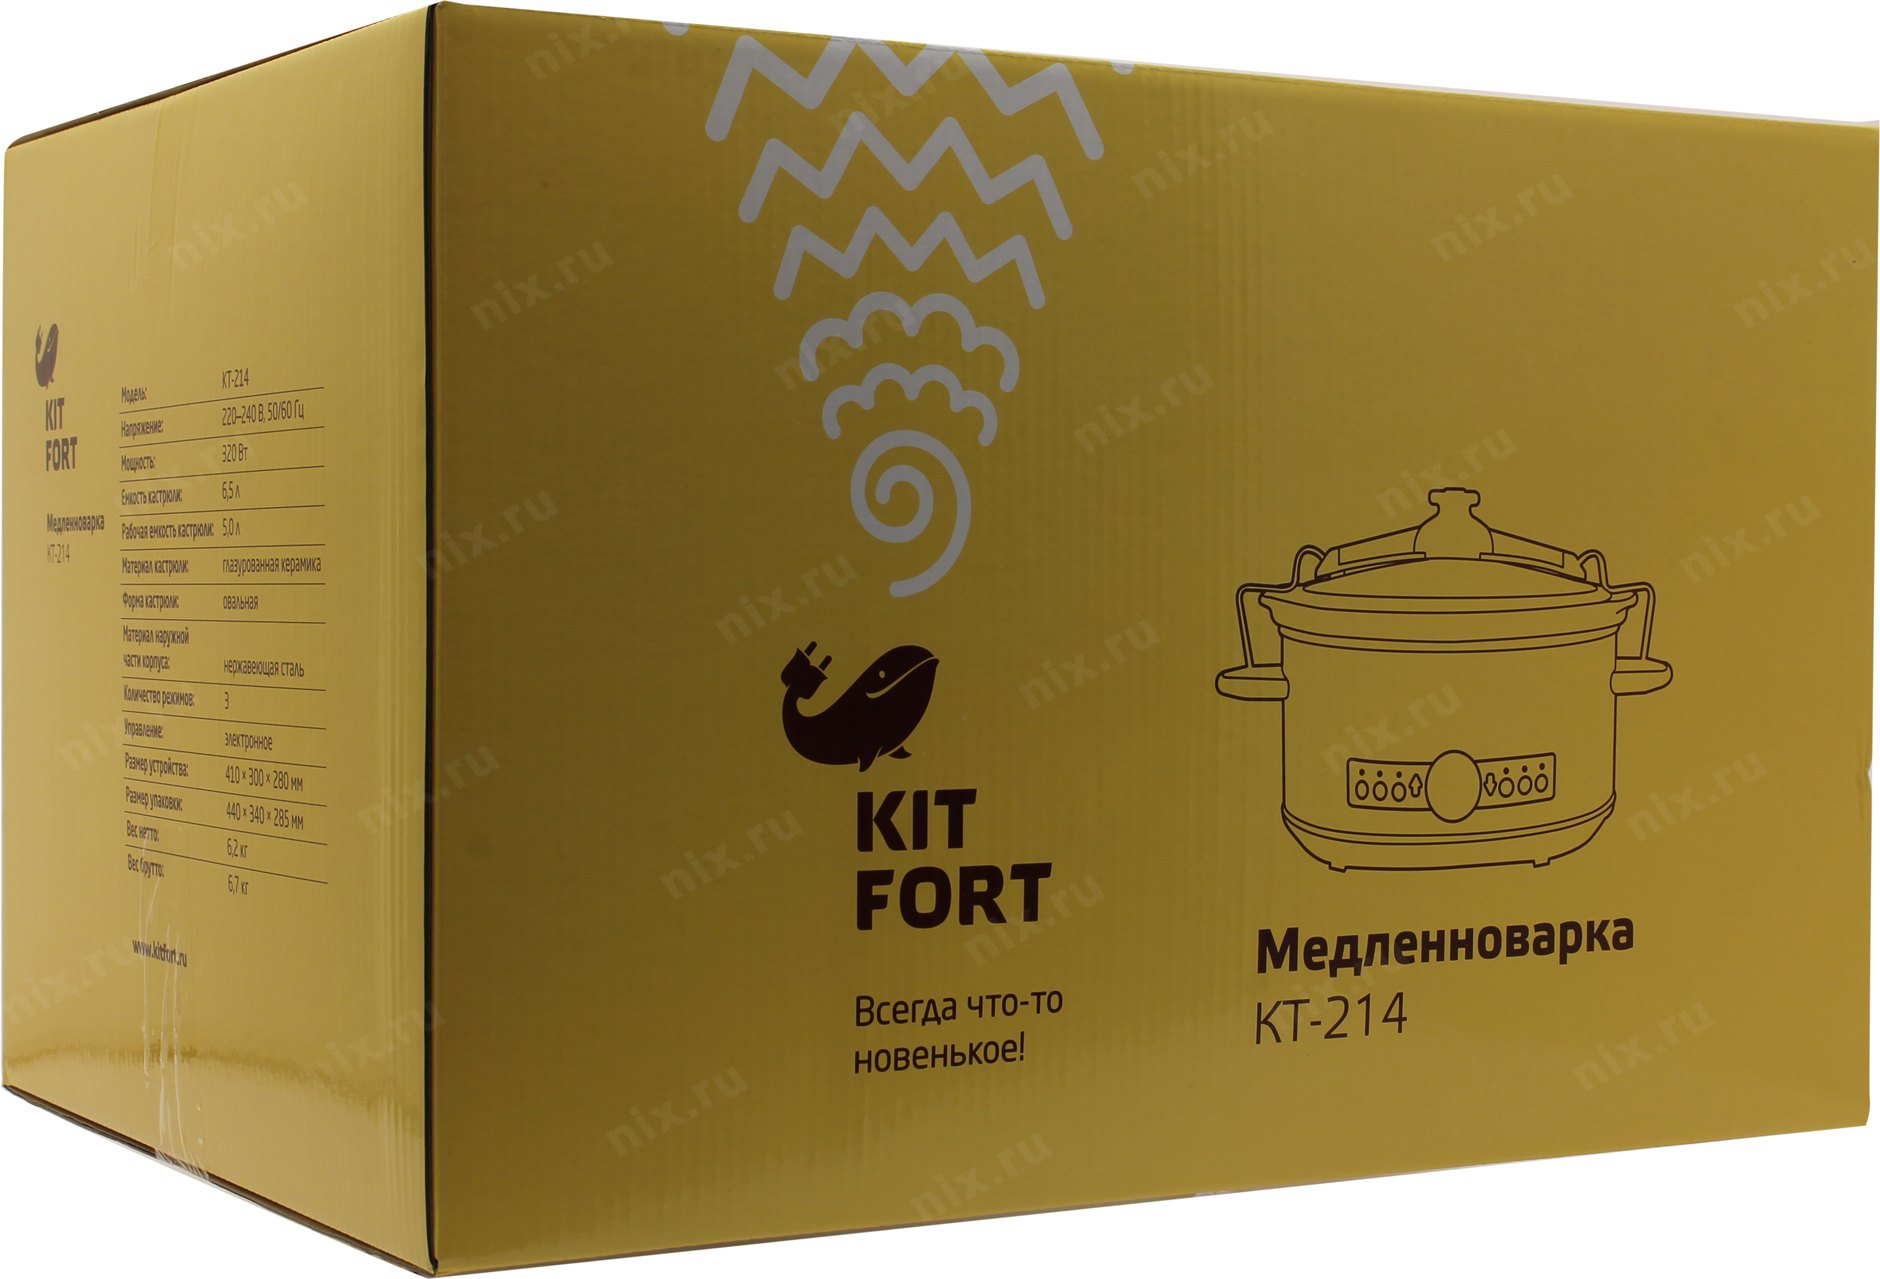 Китфорт страна производитель. Китфорт упаковка. Медленноварка Kitfort KT-214. Kitfort товары в коробках. Ирригатор Kitfort упаковка.